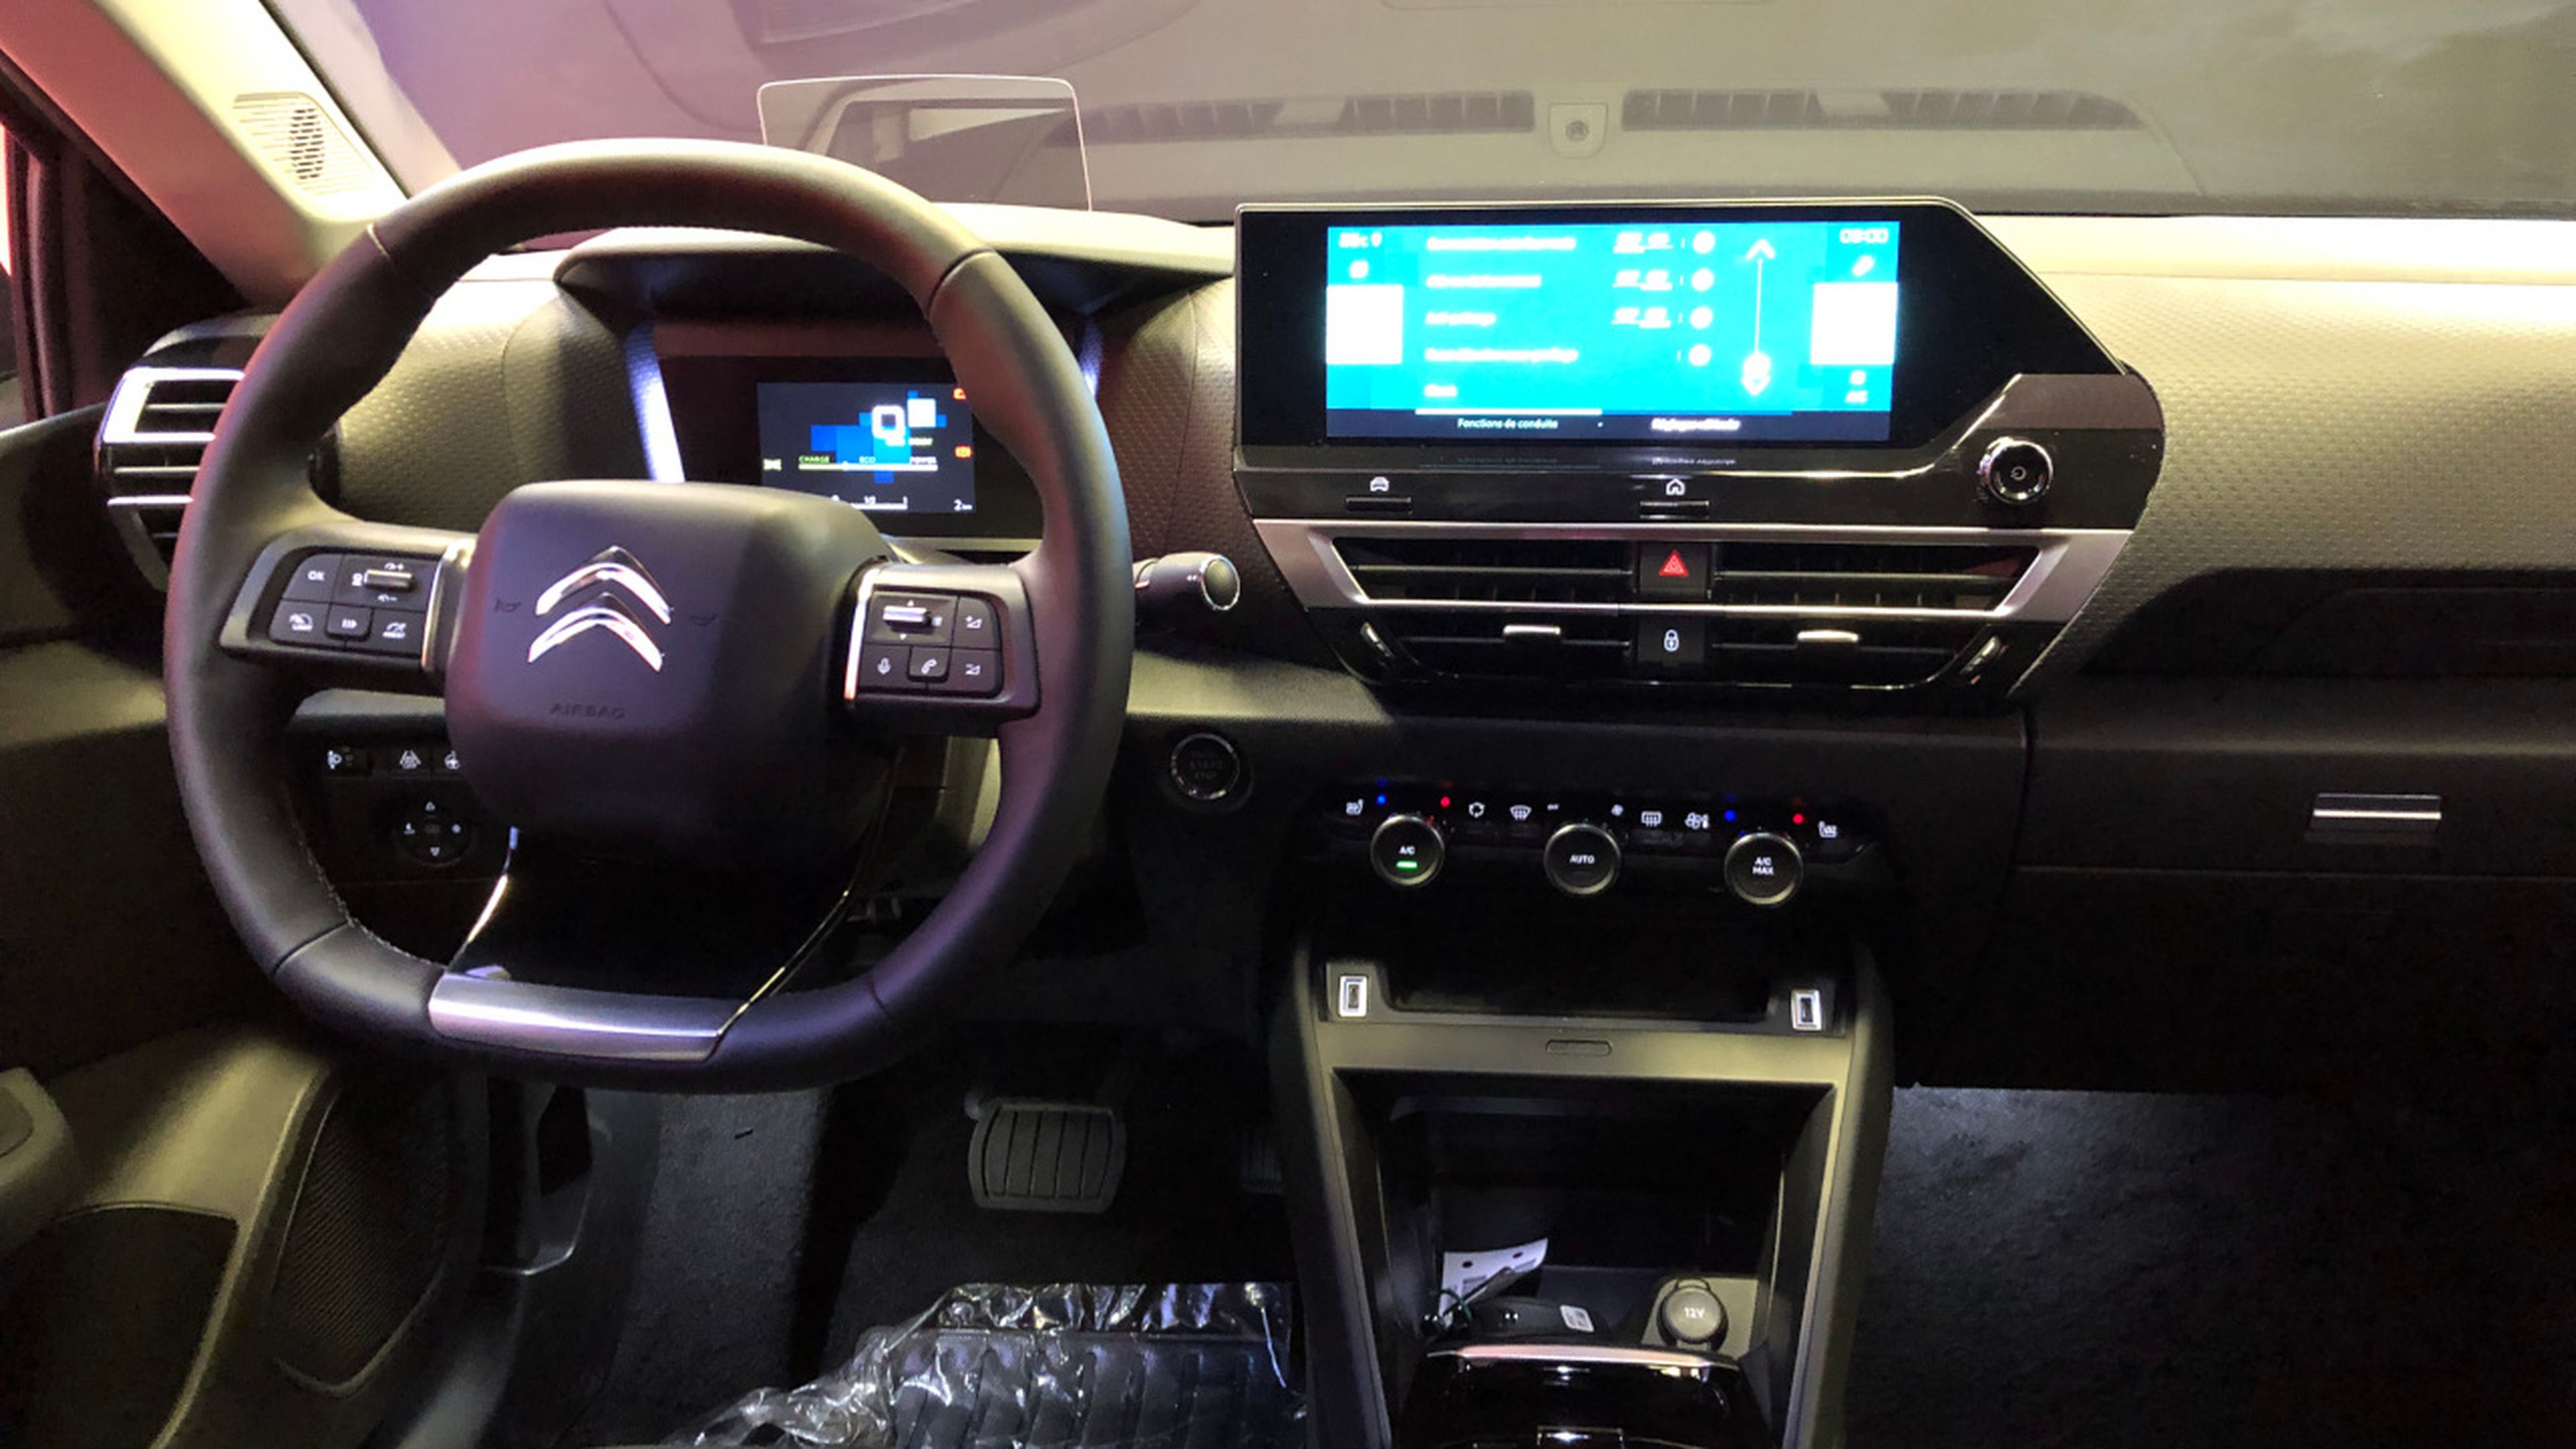 Innovación, estilo y tecnología con el nuevo Citroën C4